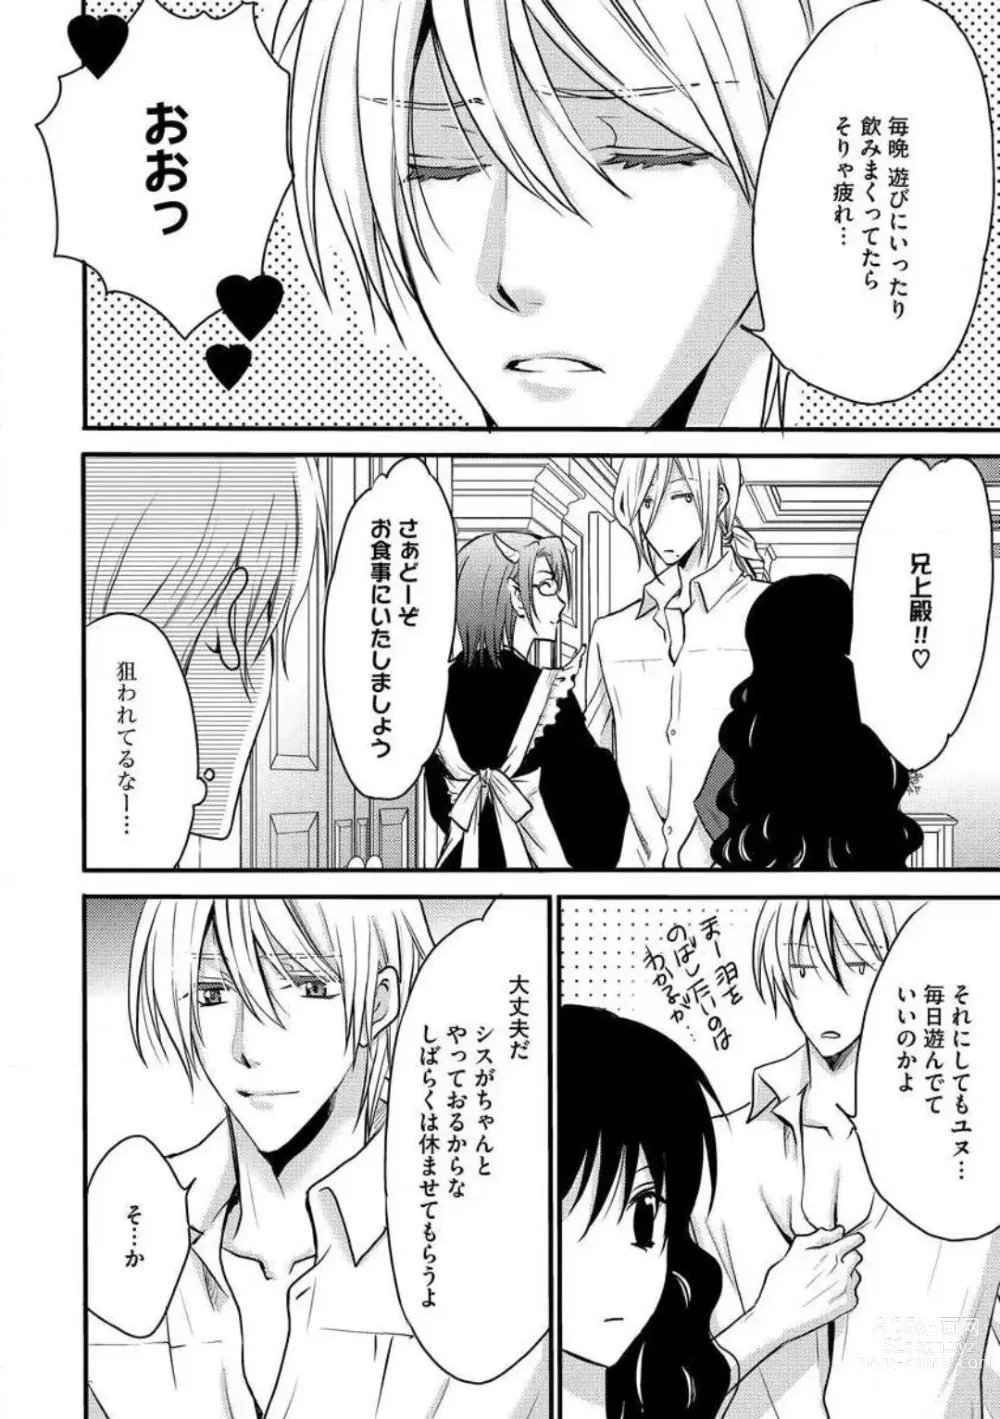 Page 298 of manga Nyotaika Vampire Maji de Shojo Soushitsu 5-byou Mae 1-12